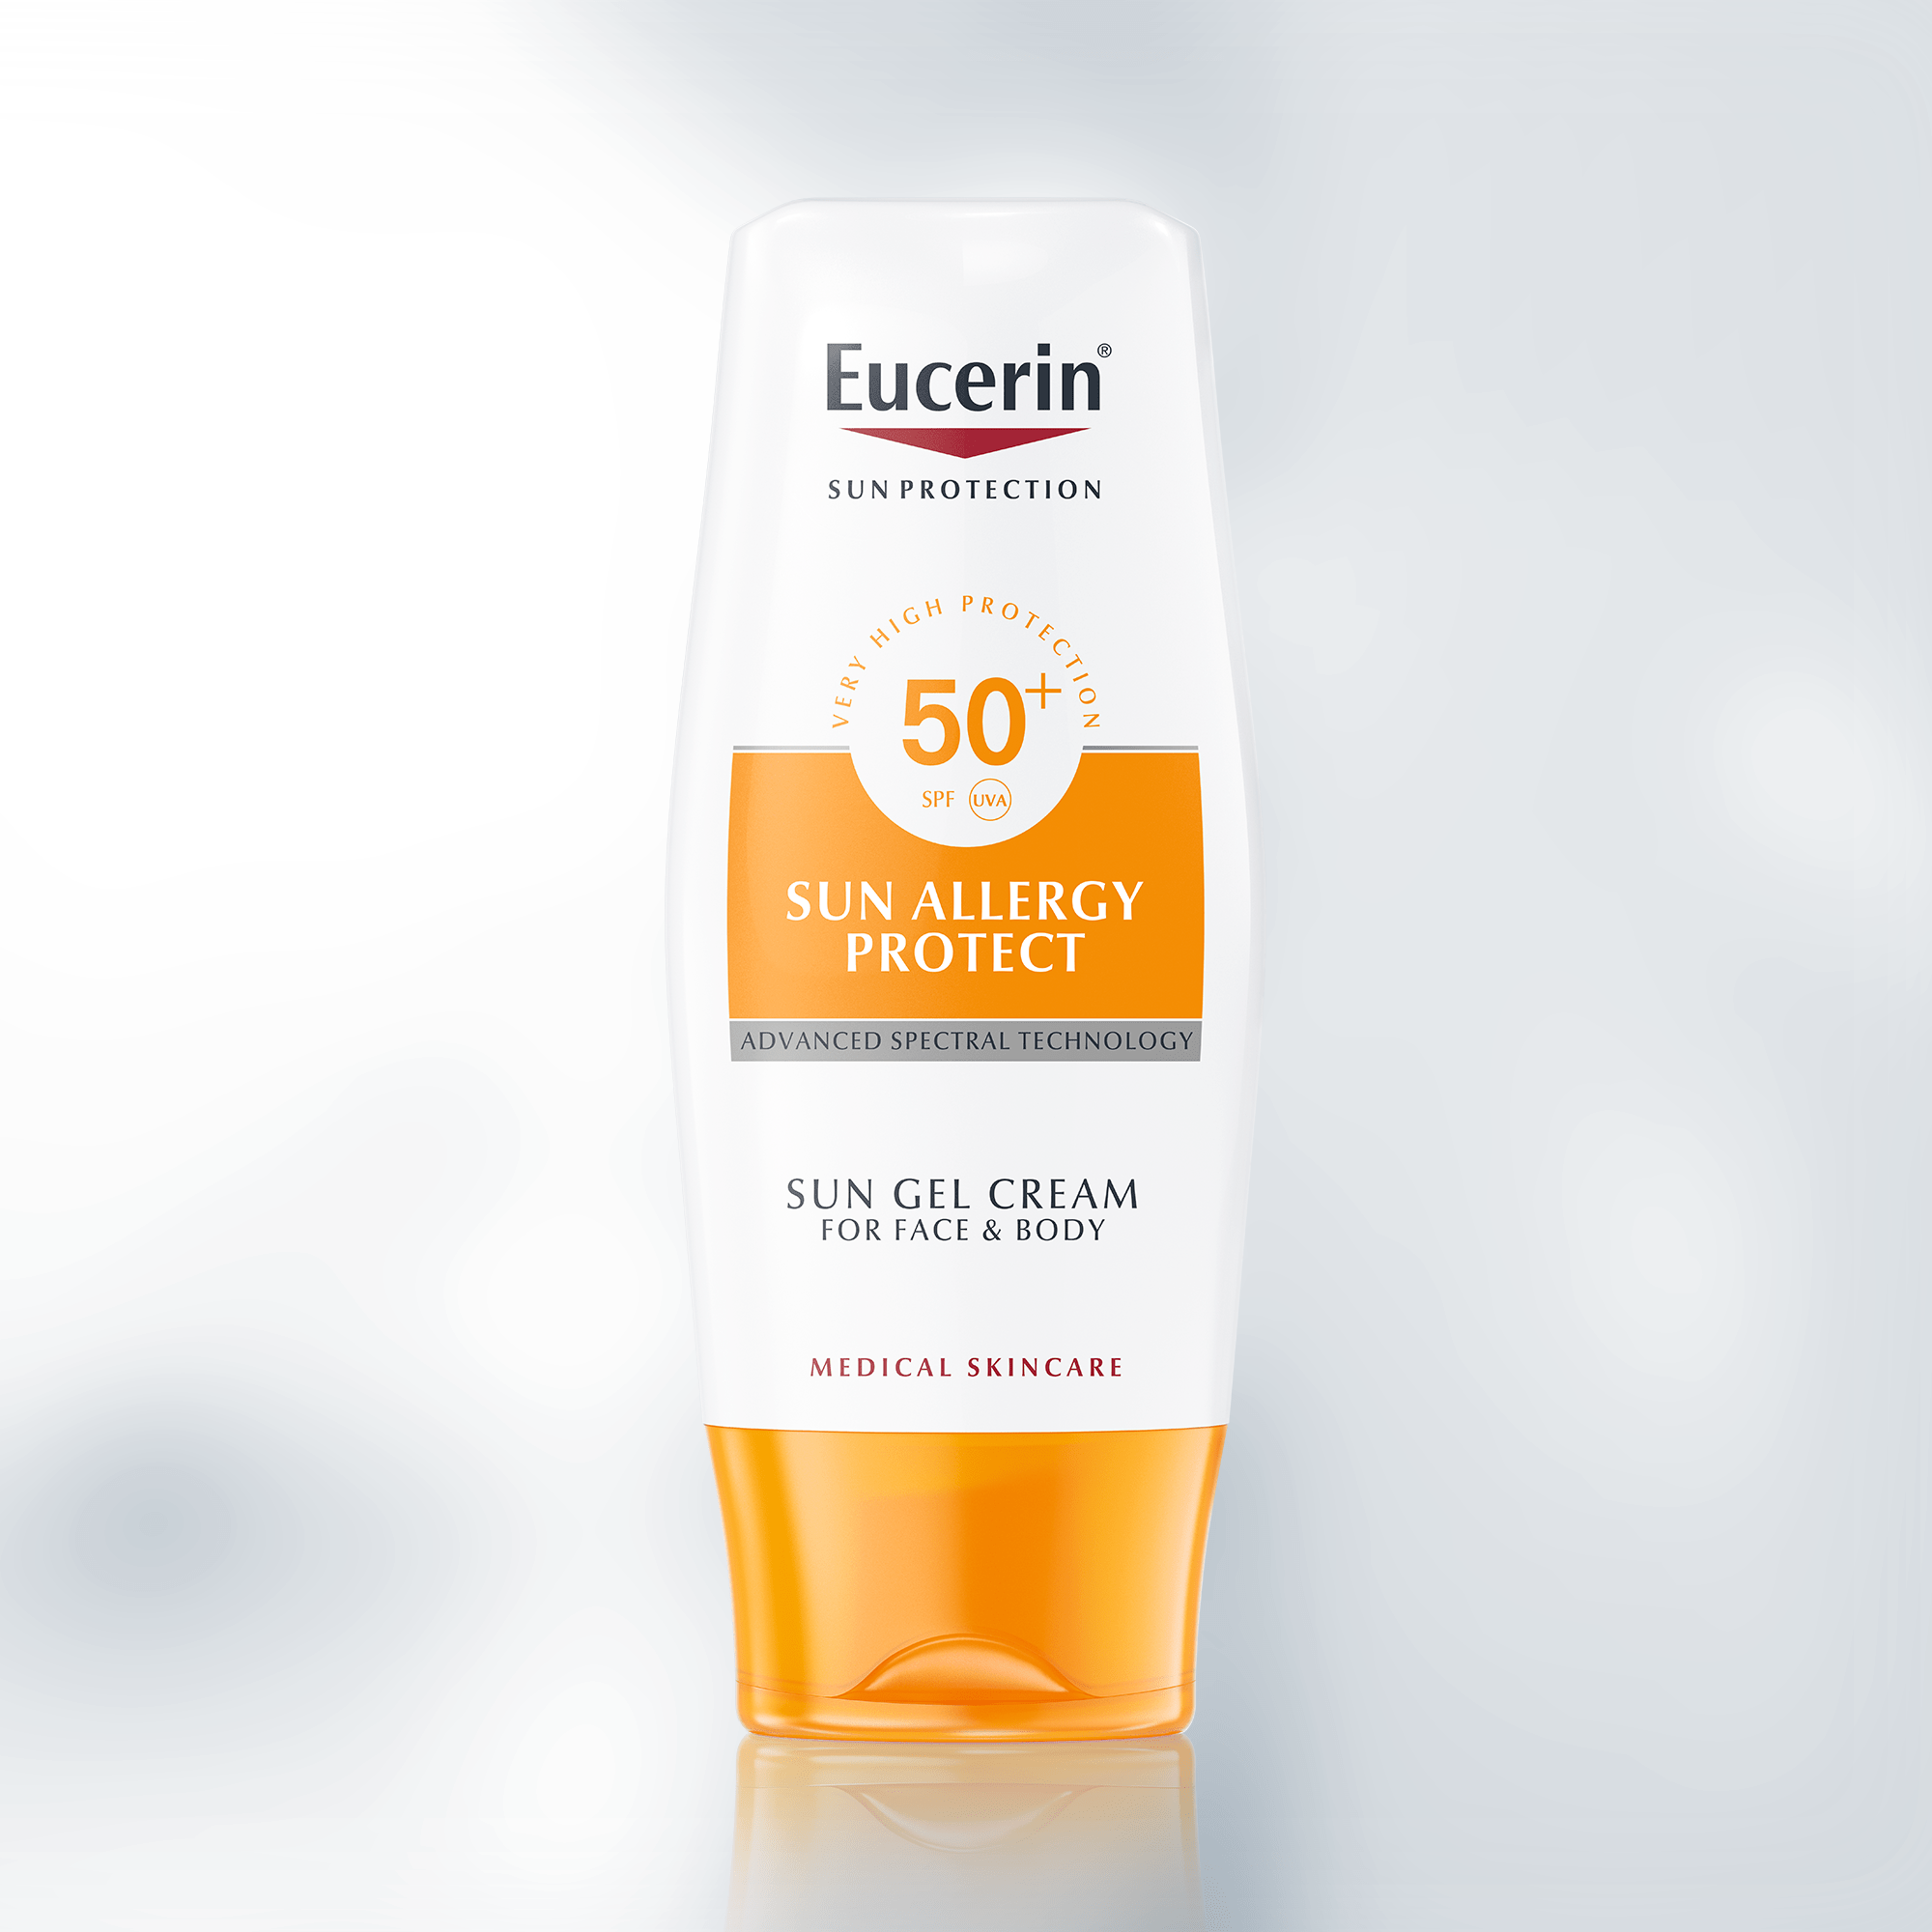 Eucerin Creme-Gel Solar Protecção Alergias FPS 50